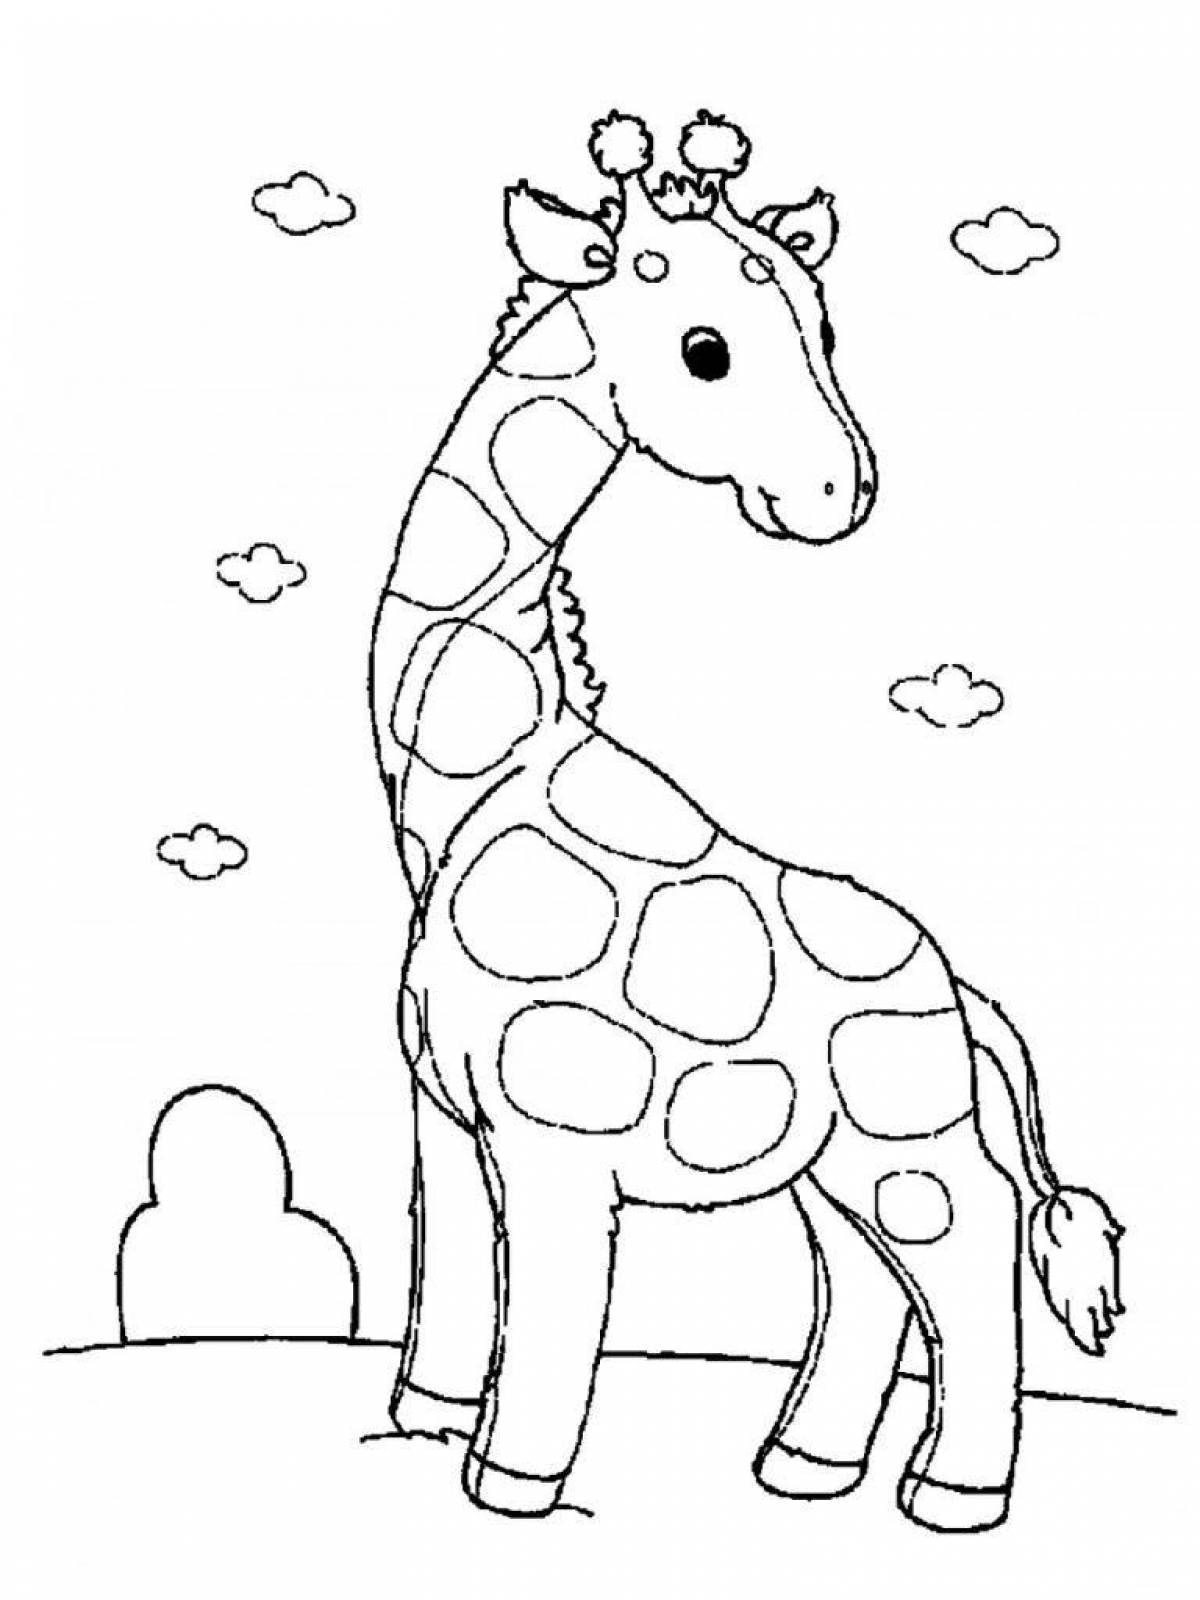 Волшебная раскраска жирафа для маленьких учеников